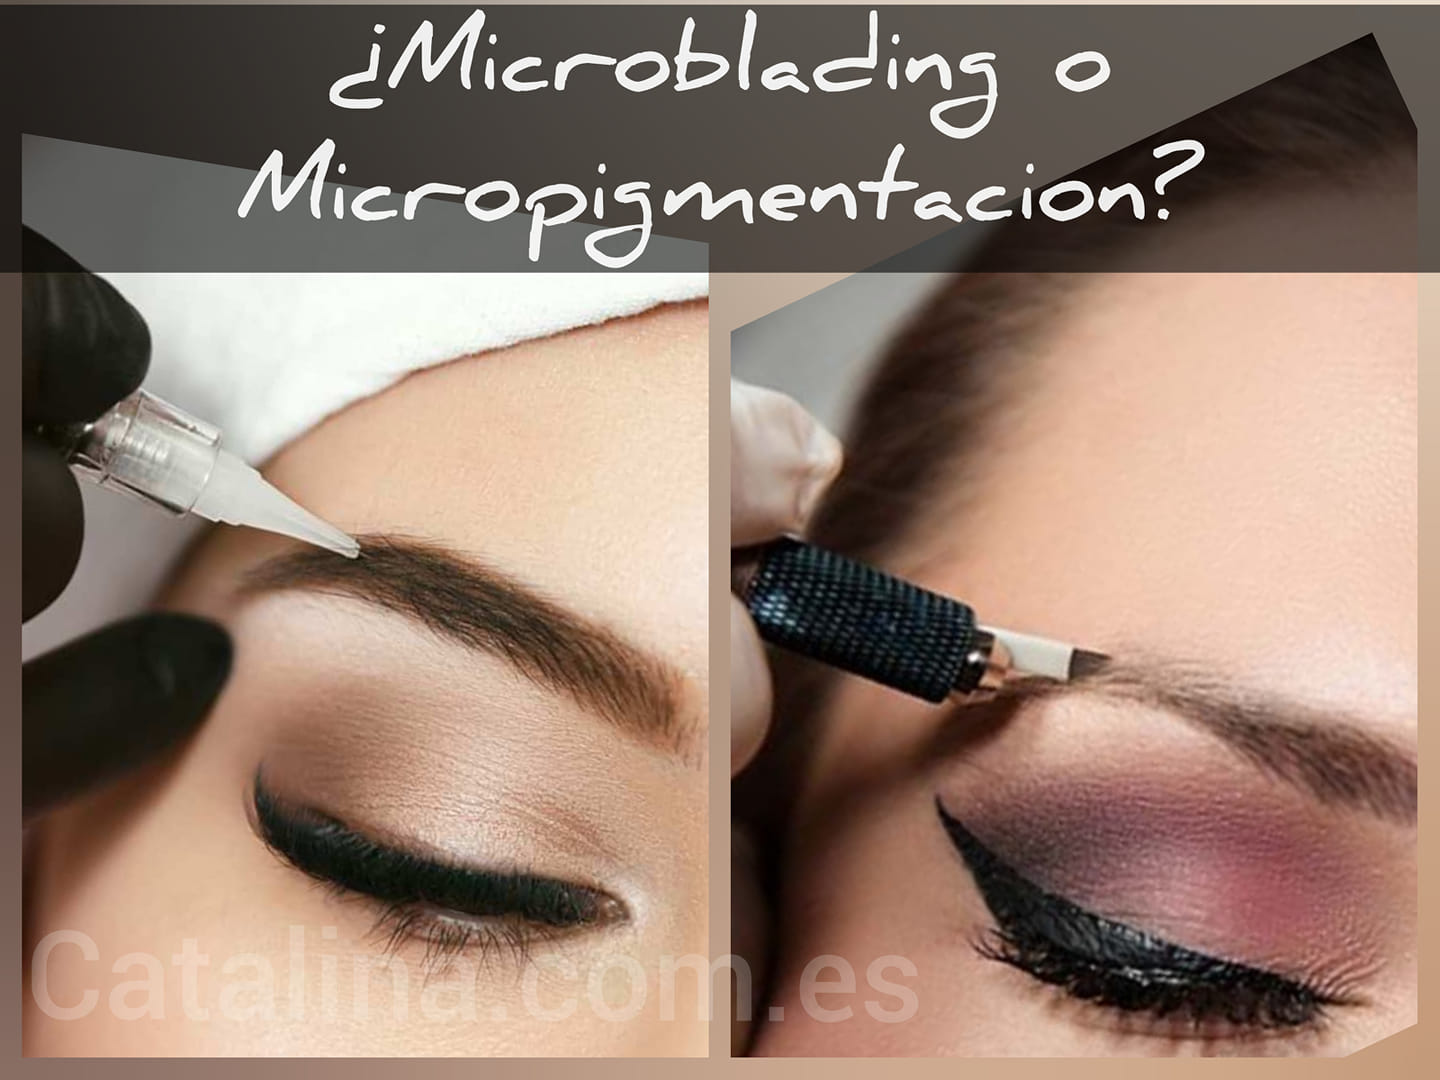 microblading o micropigmentacion